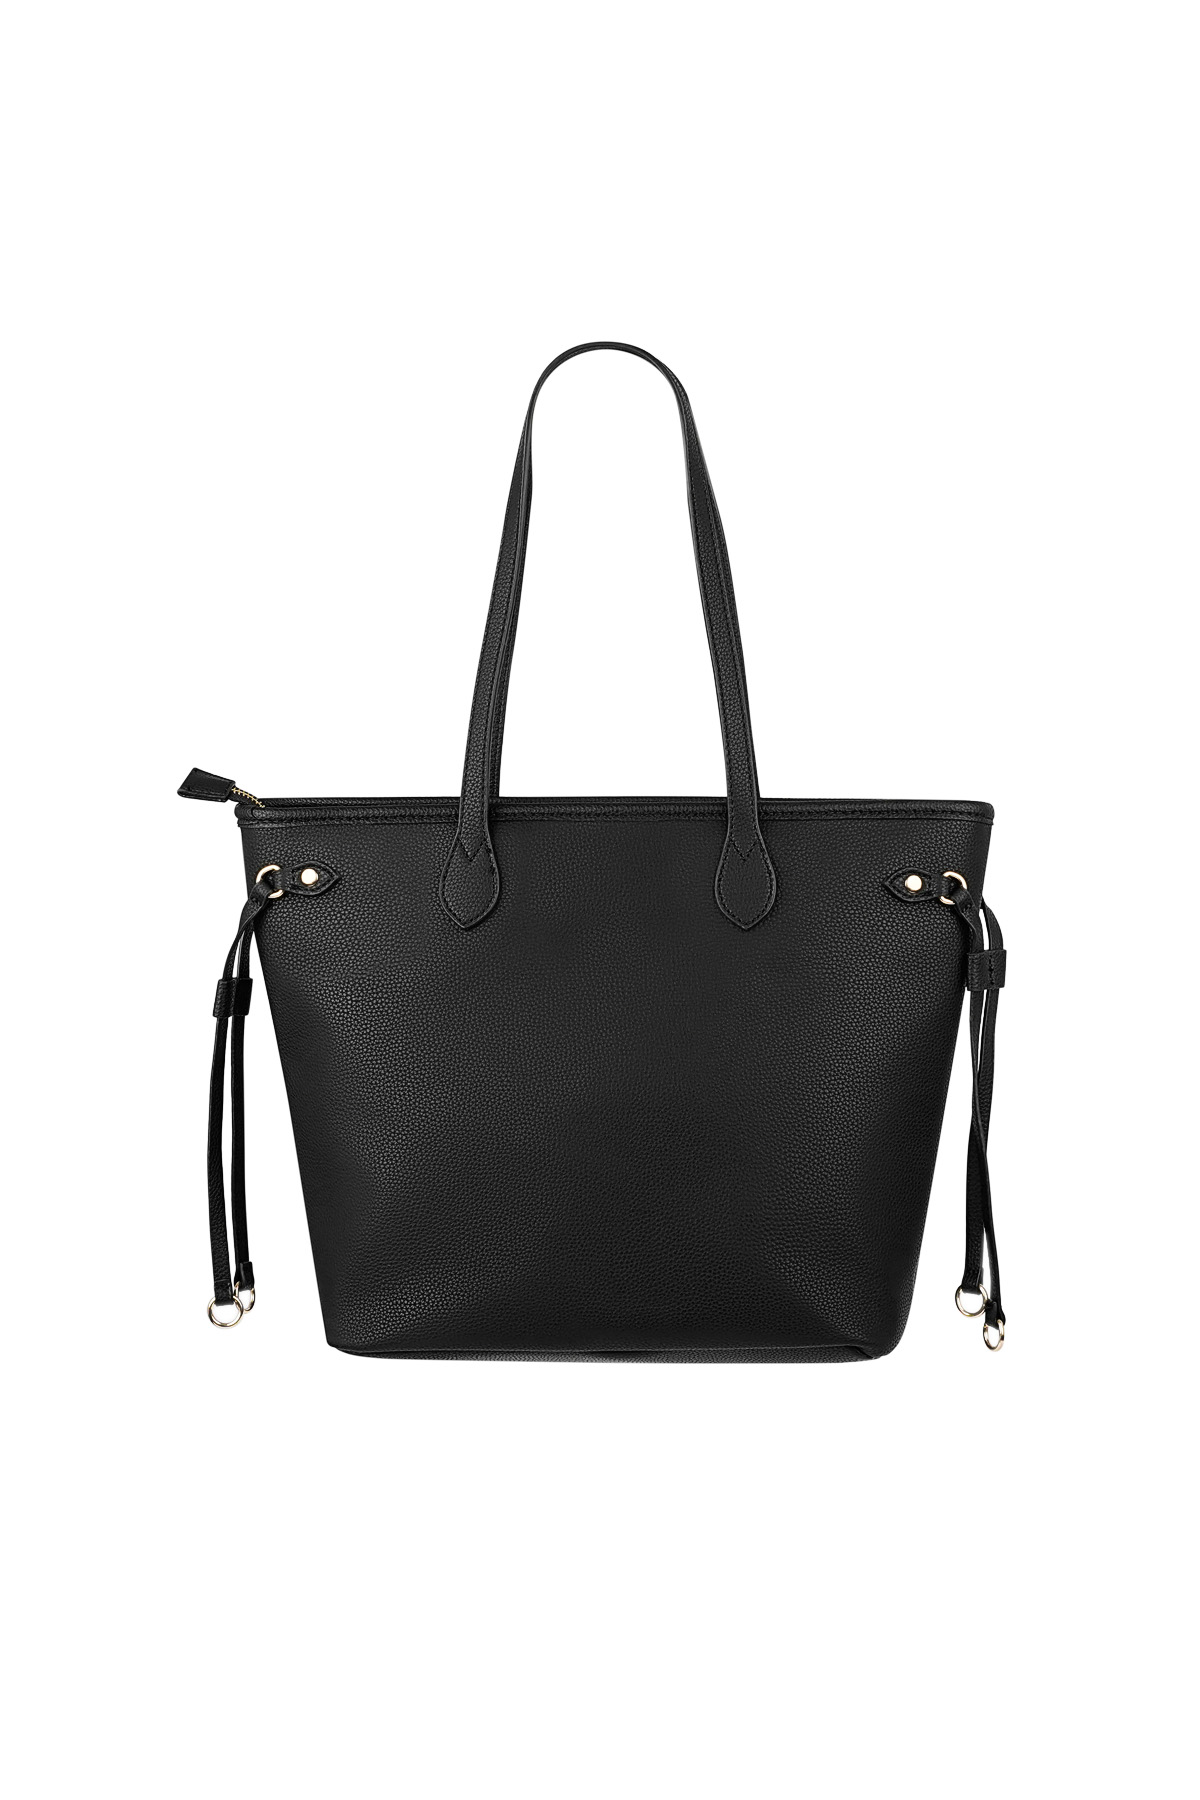 Handtasche mit Riemen - schwarz h5 